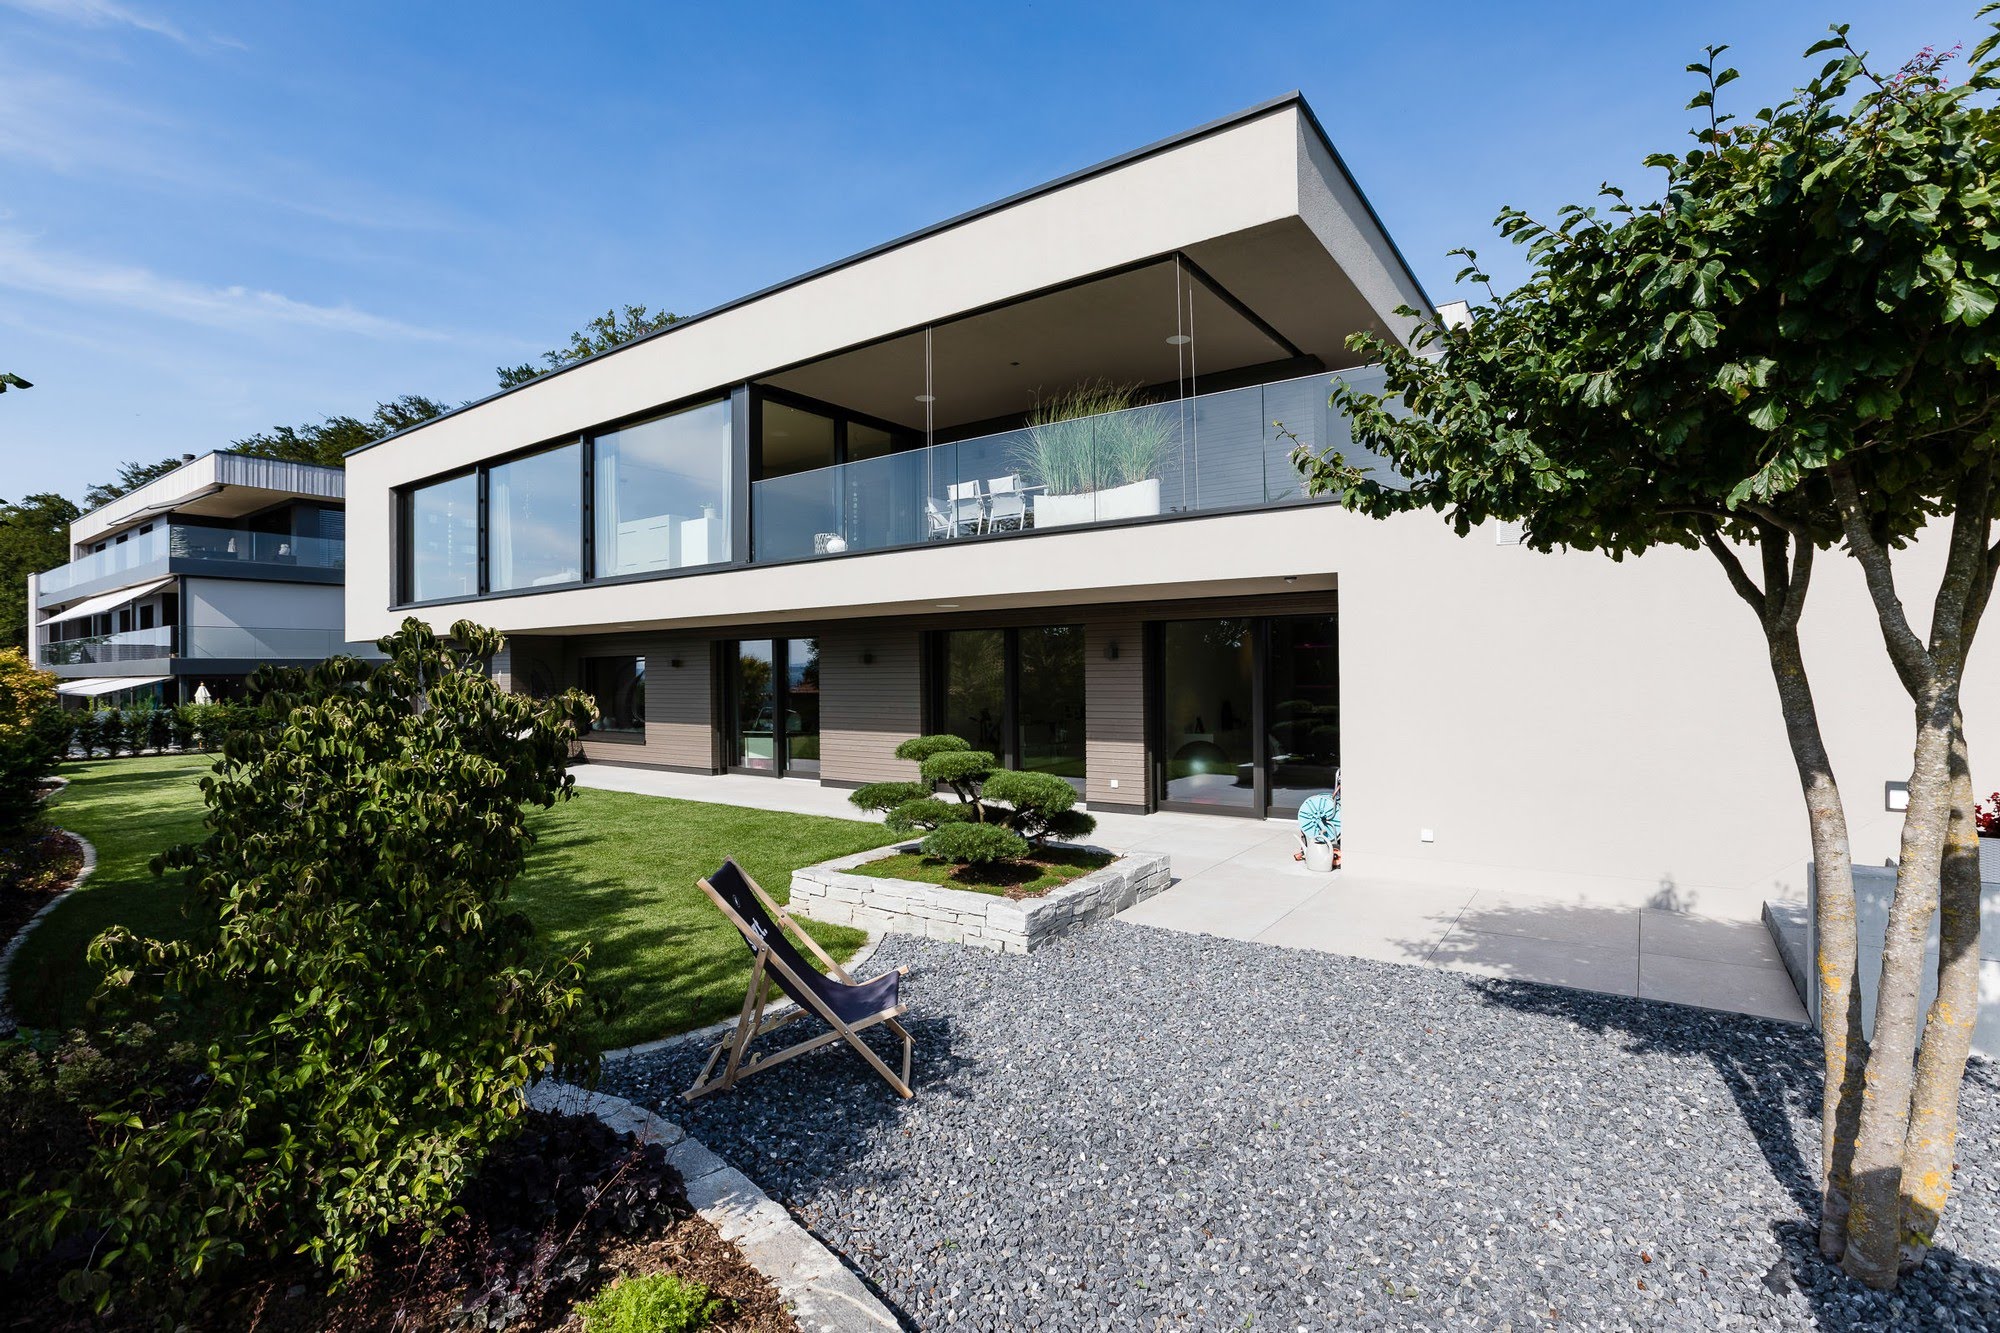 Wohnen EFH EFH 1 Striegelhöhe in Schenkon Architektur,Wohnungsbau,Wohnhäuser,Einfamilienhäuser,Mehrfamilienhäuser